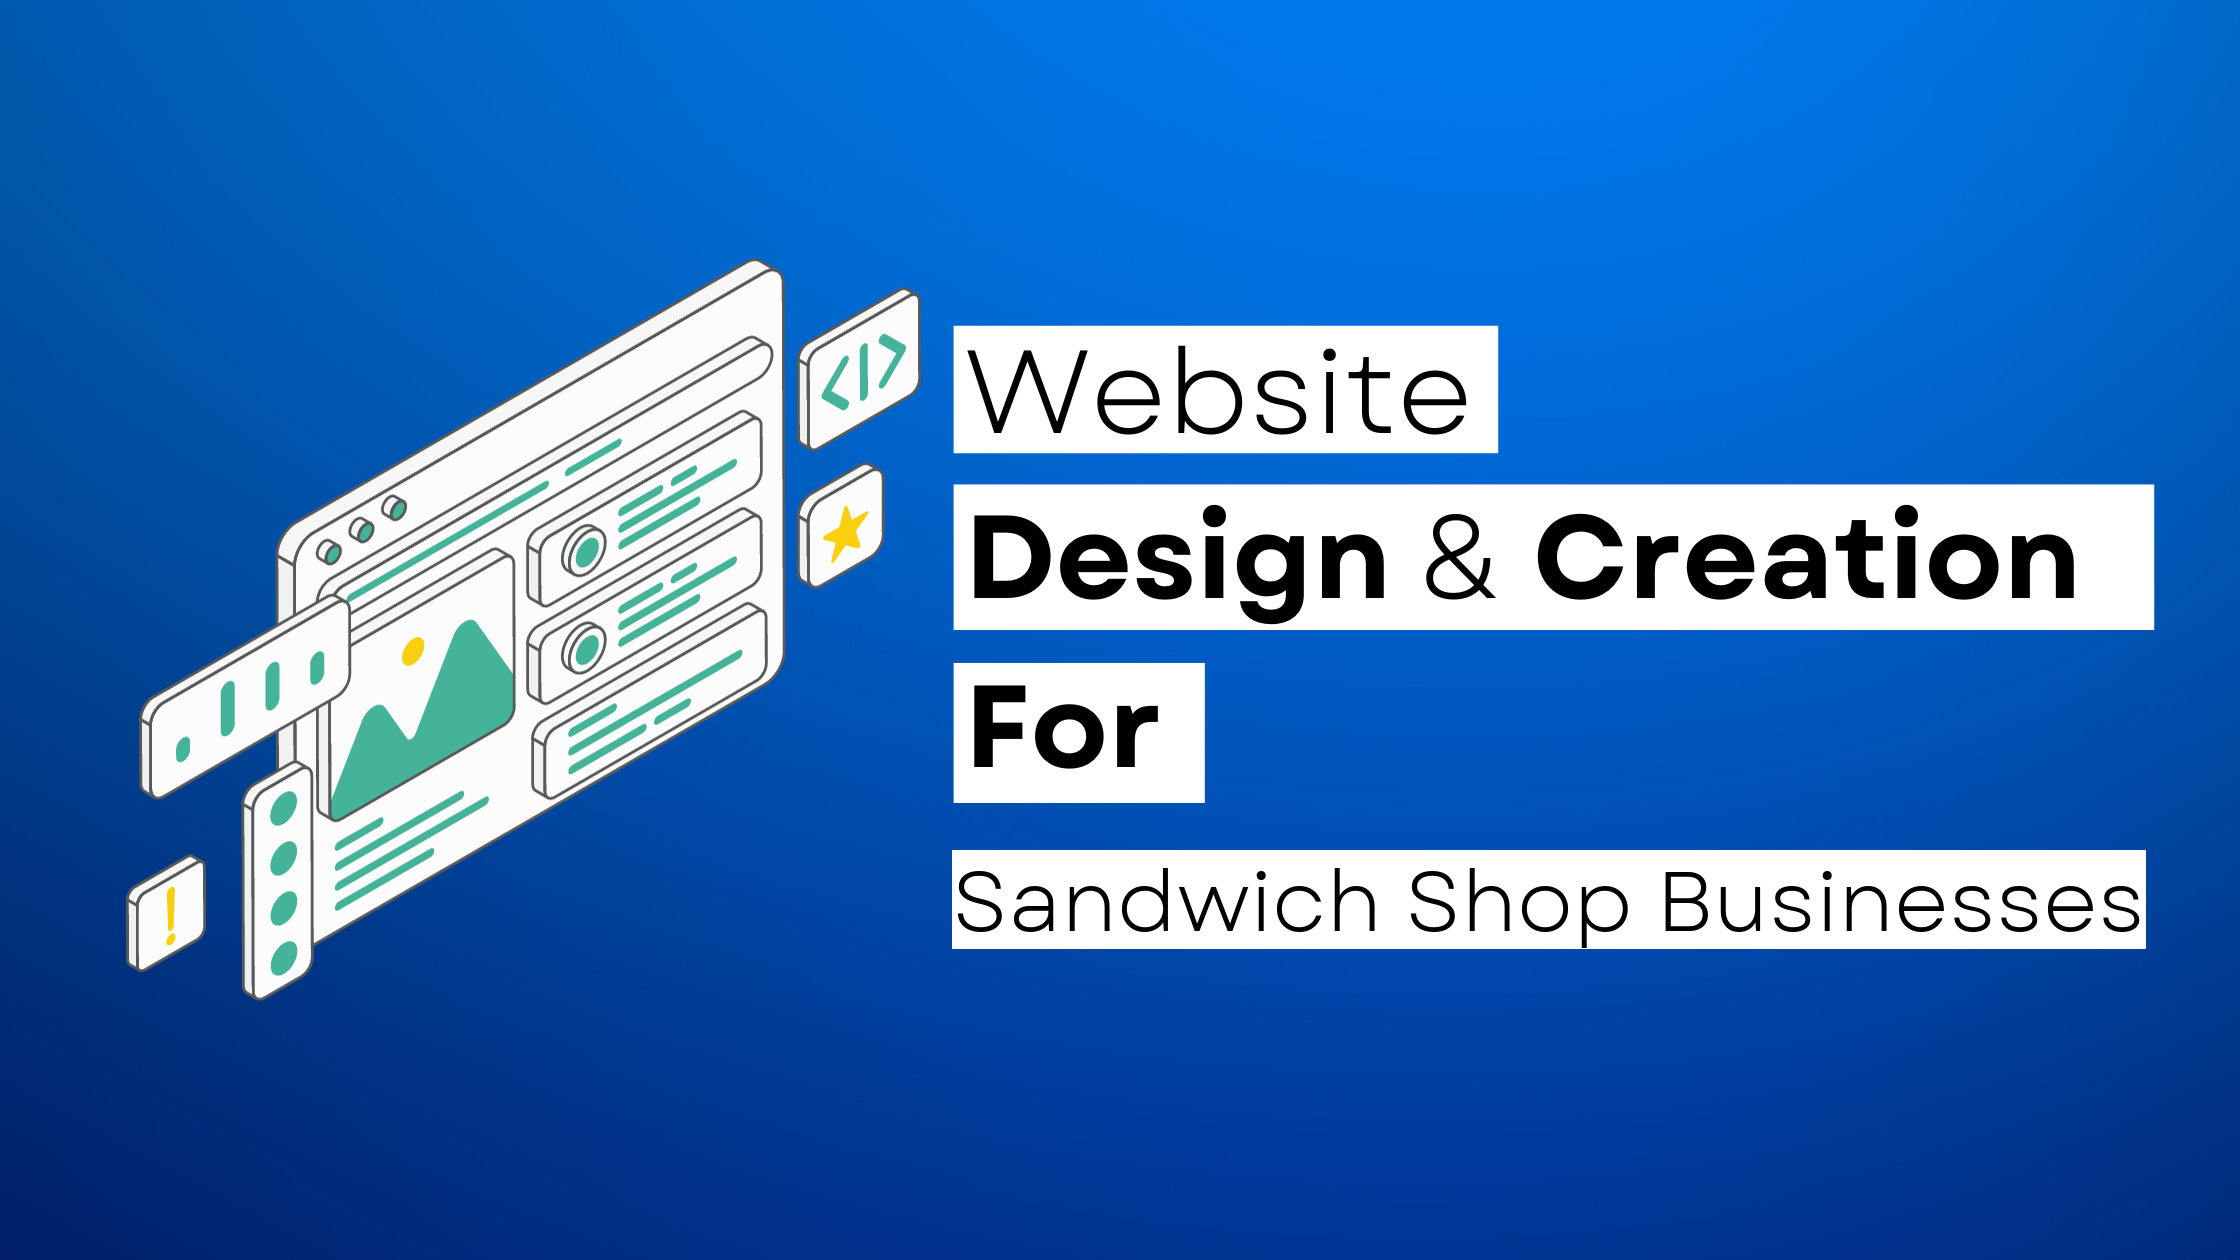 How to start a Sandwich Shop website